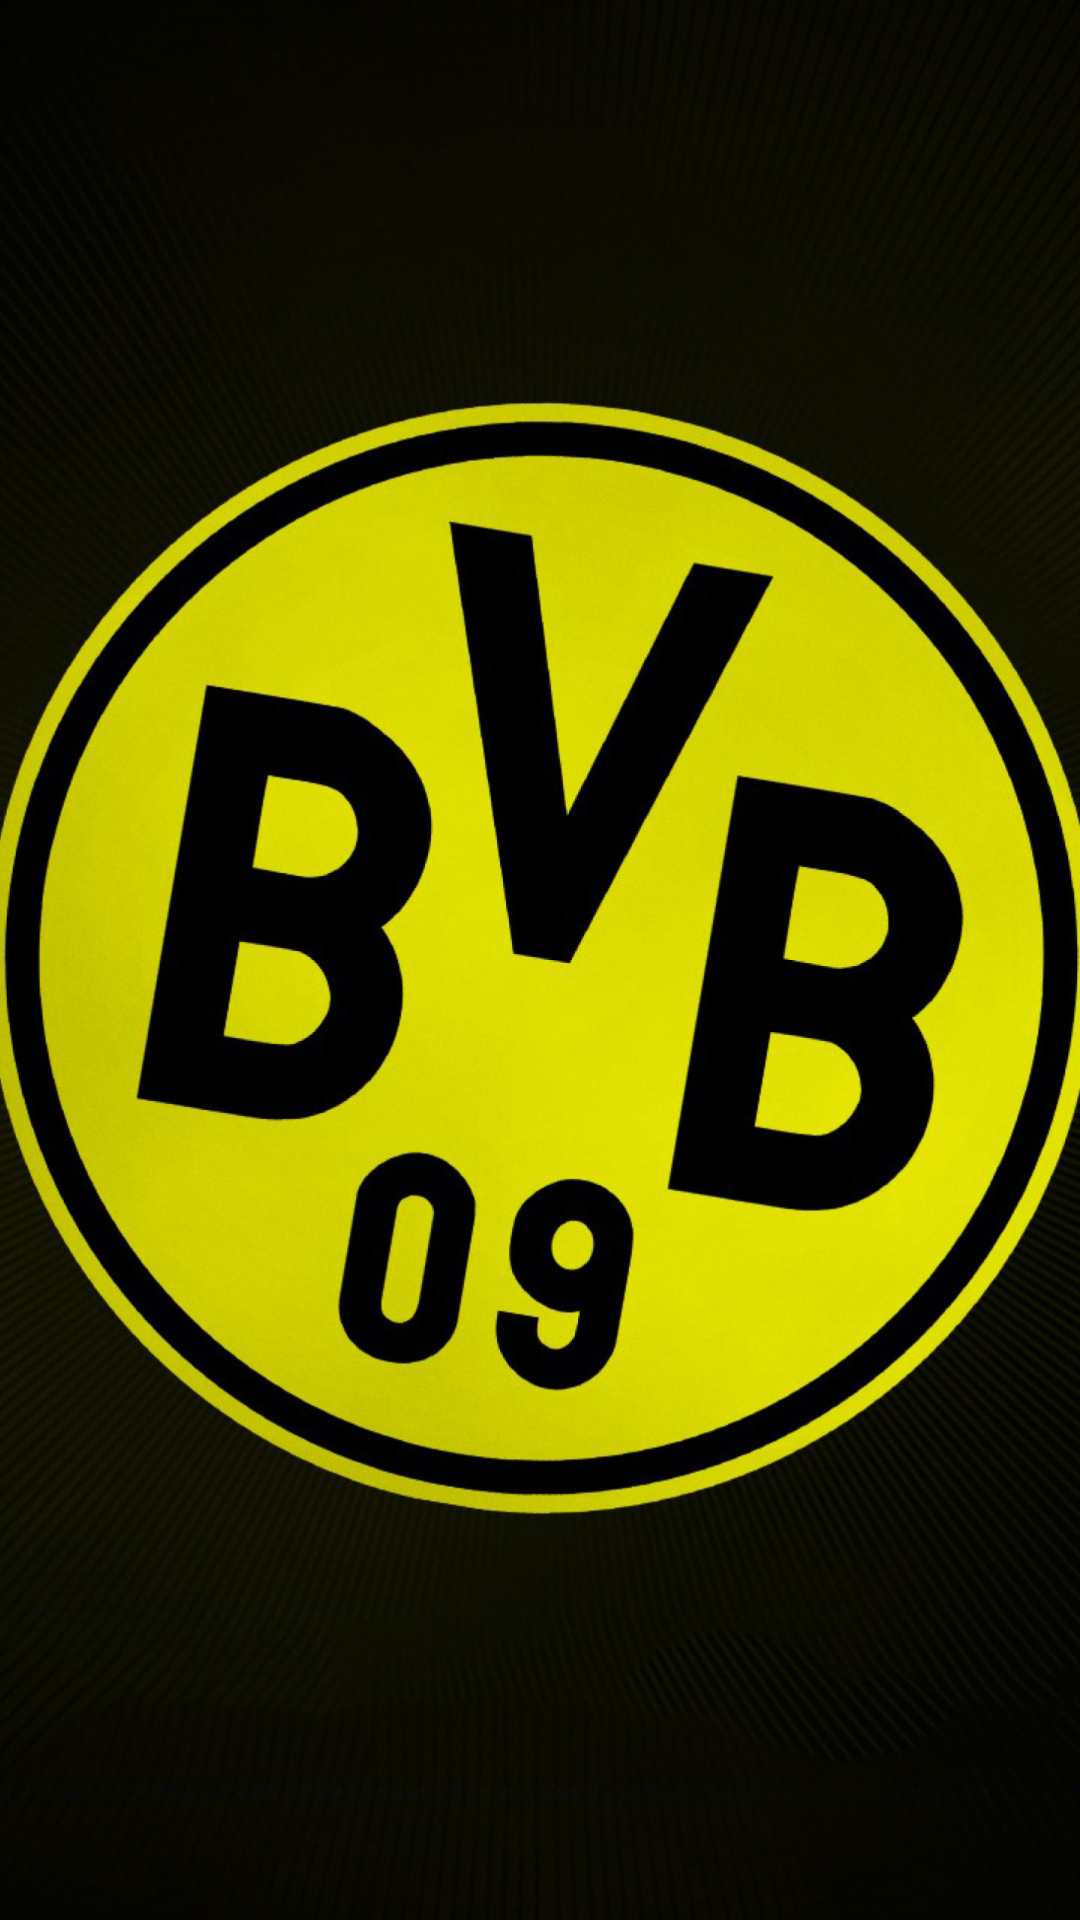 Borussia Dortmund - BVB wallpaper 1080x1920